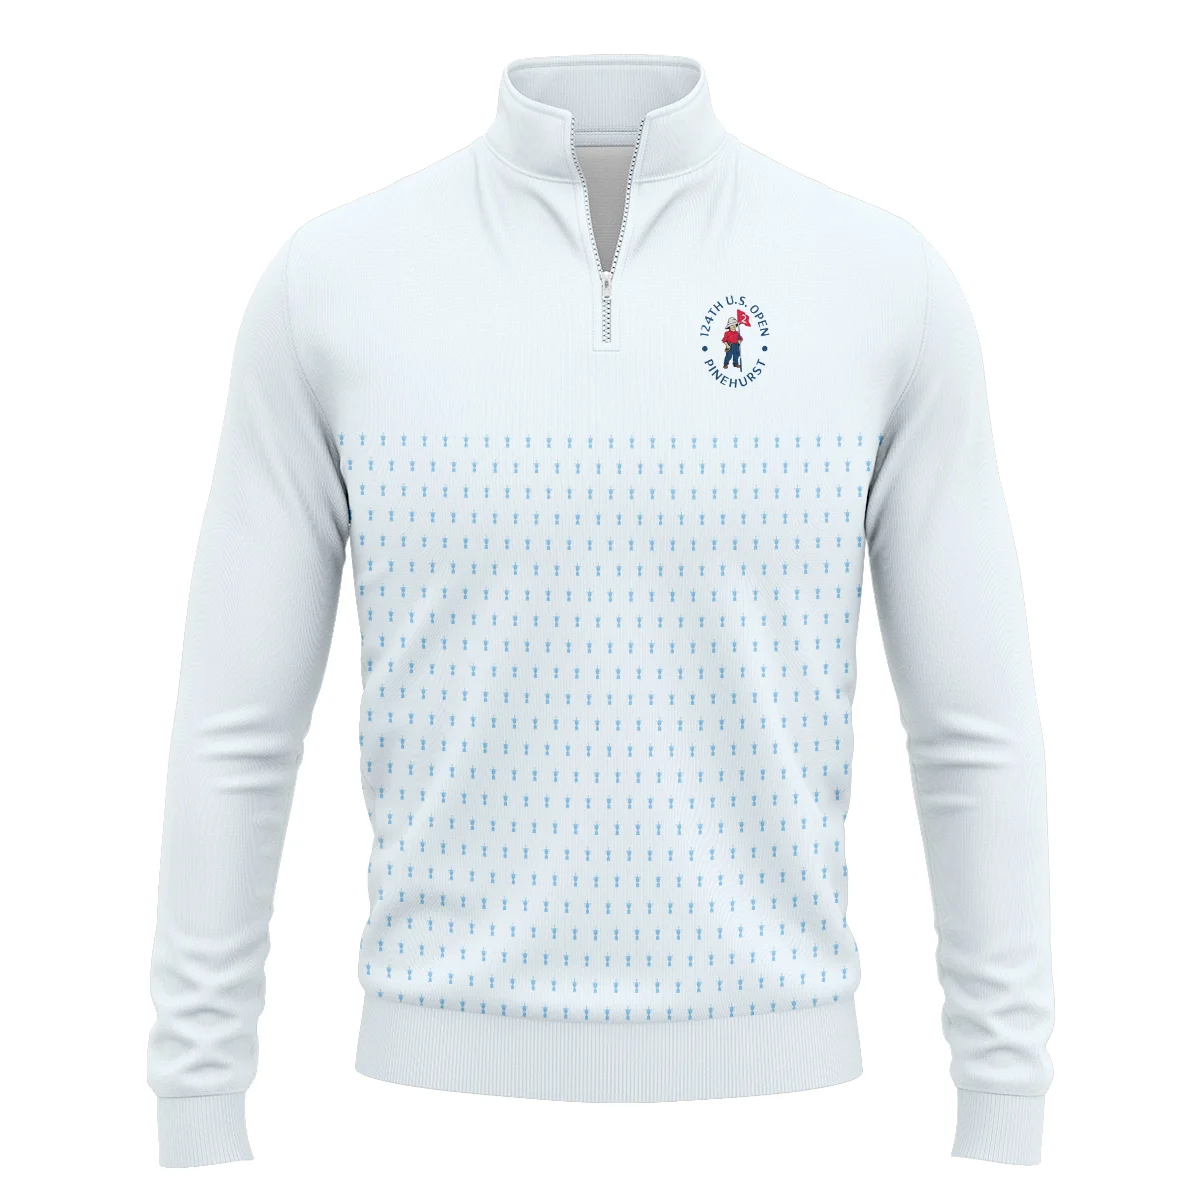 U.S Open Trophy Pattern Light Blue 124th U.S. Open Pinehurst Titleist Polo Shirt Mandarin Collar Polo Shirt